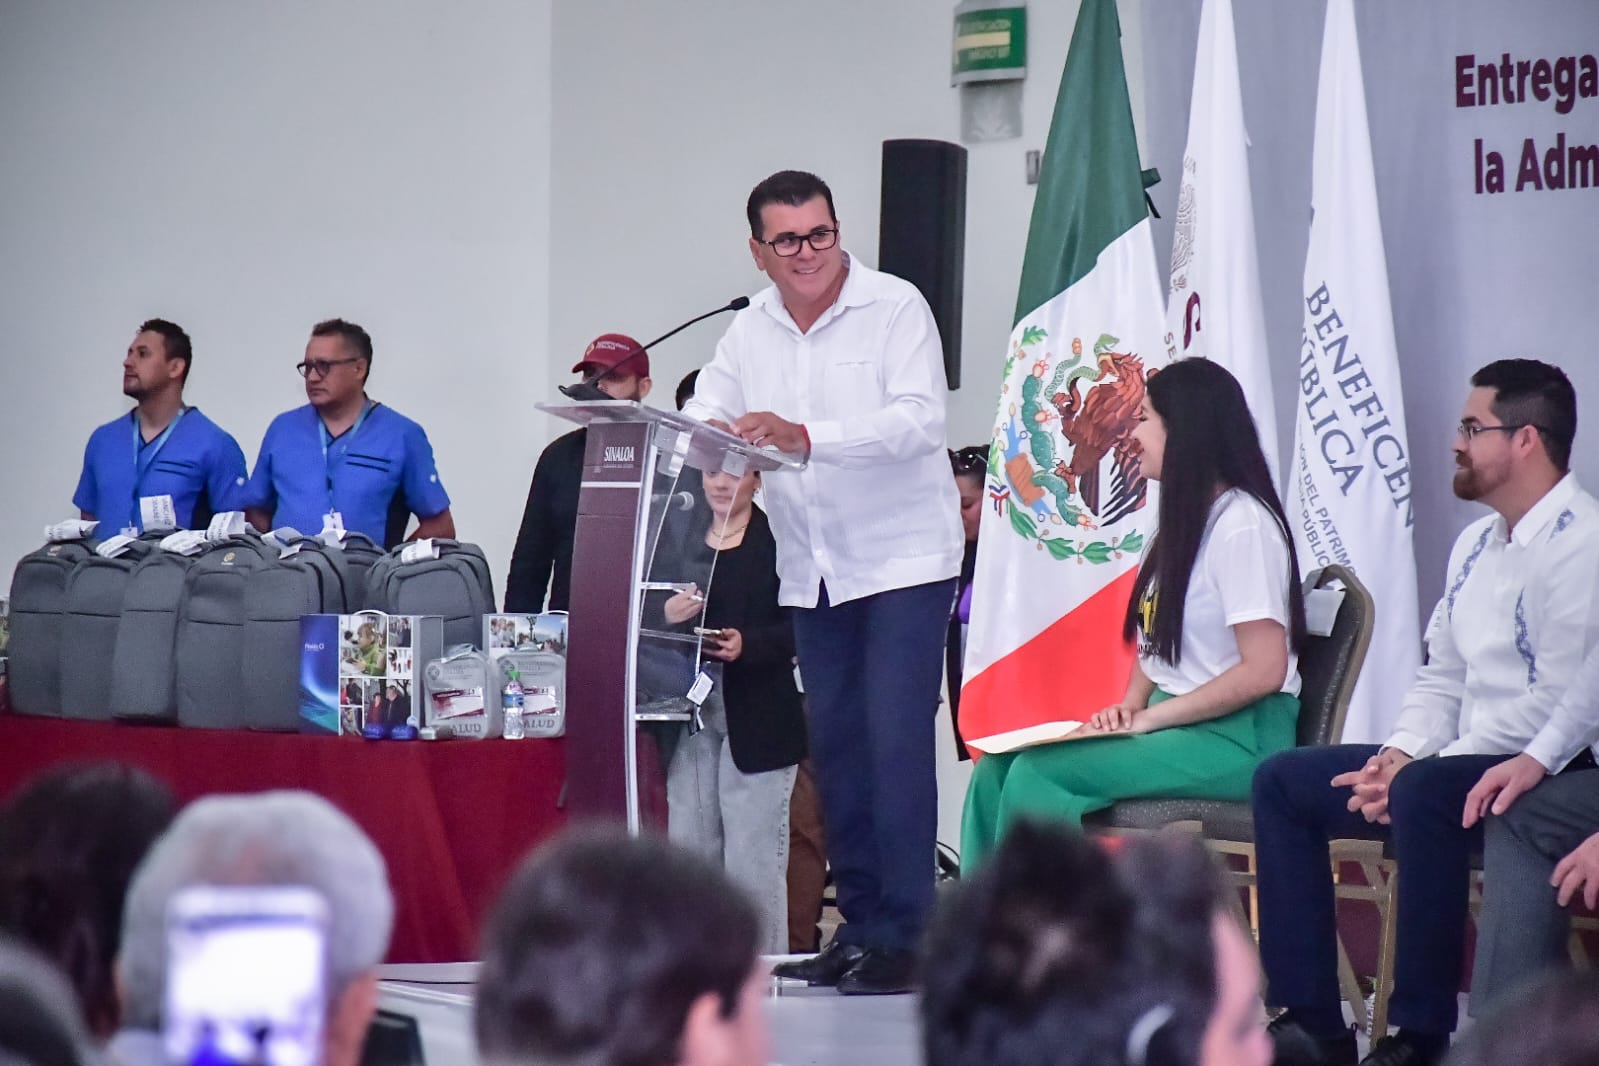 - Ambulancias, procesadores cocleares y apoyos funcionales fueron recibidos por los beneficiarios de diversos estados de la República en presencia del Gobernador Rubén Rocha Moya y el Alcalde Edgar González.